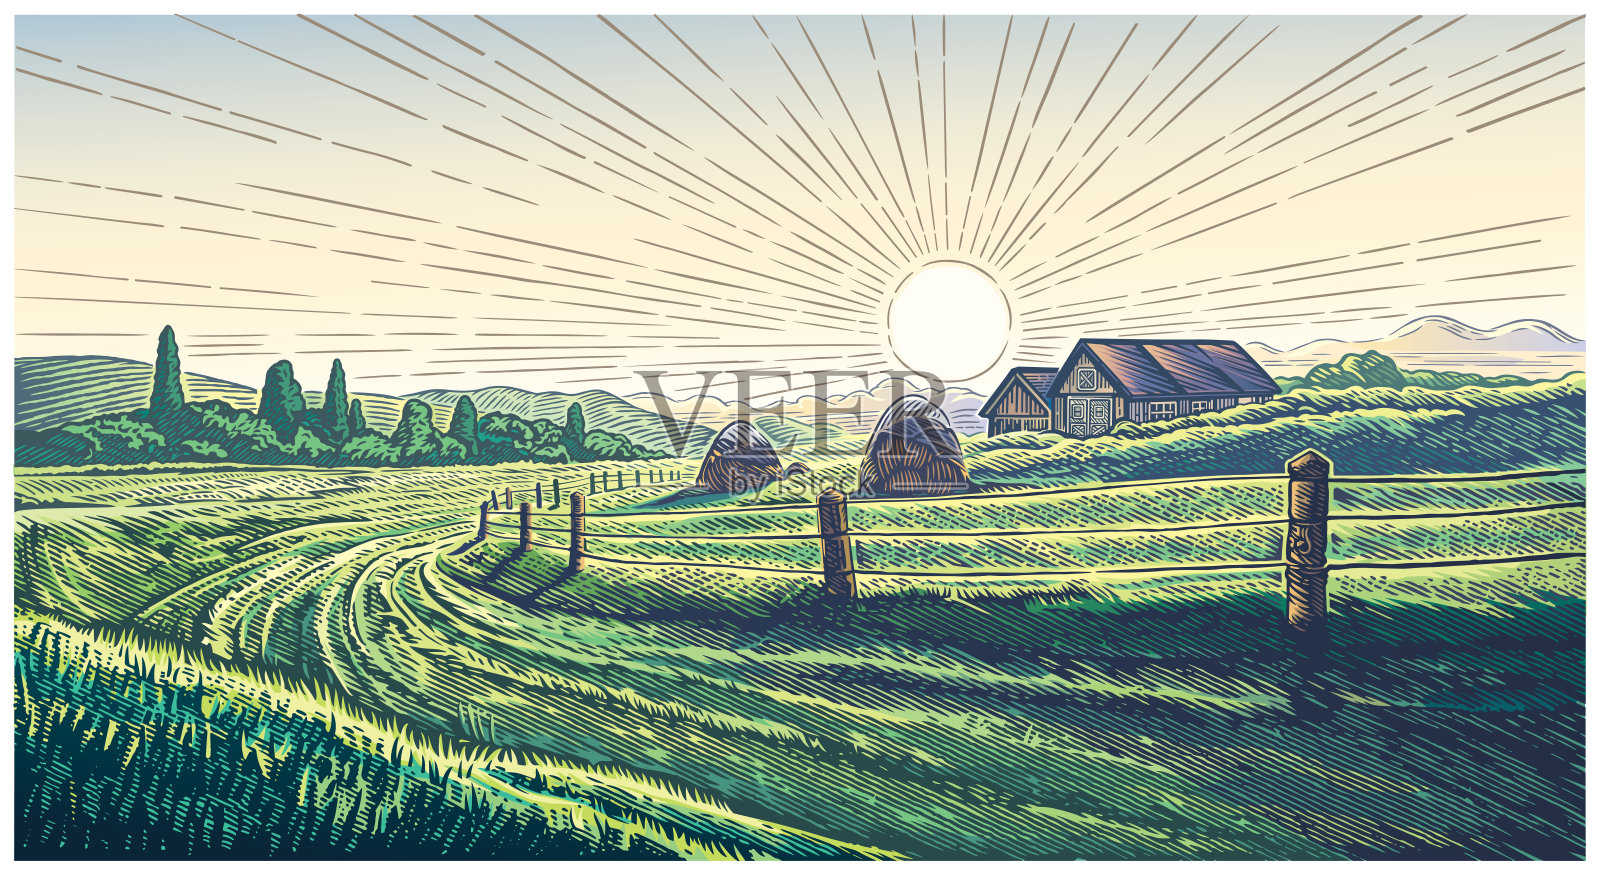 版画风格的乡村风景画插画图片素材